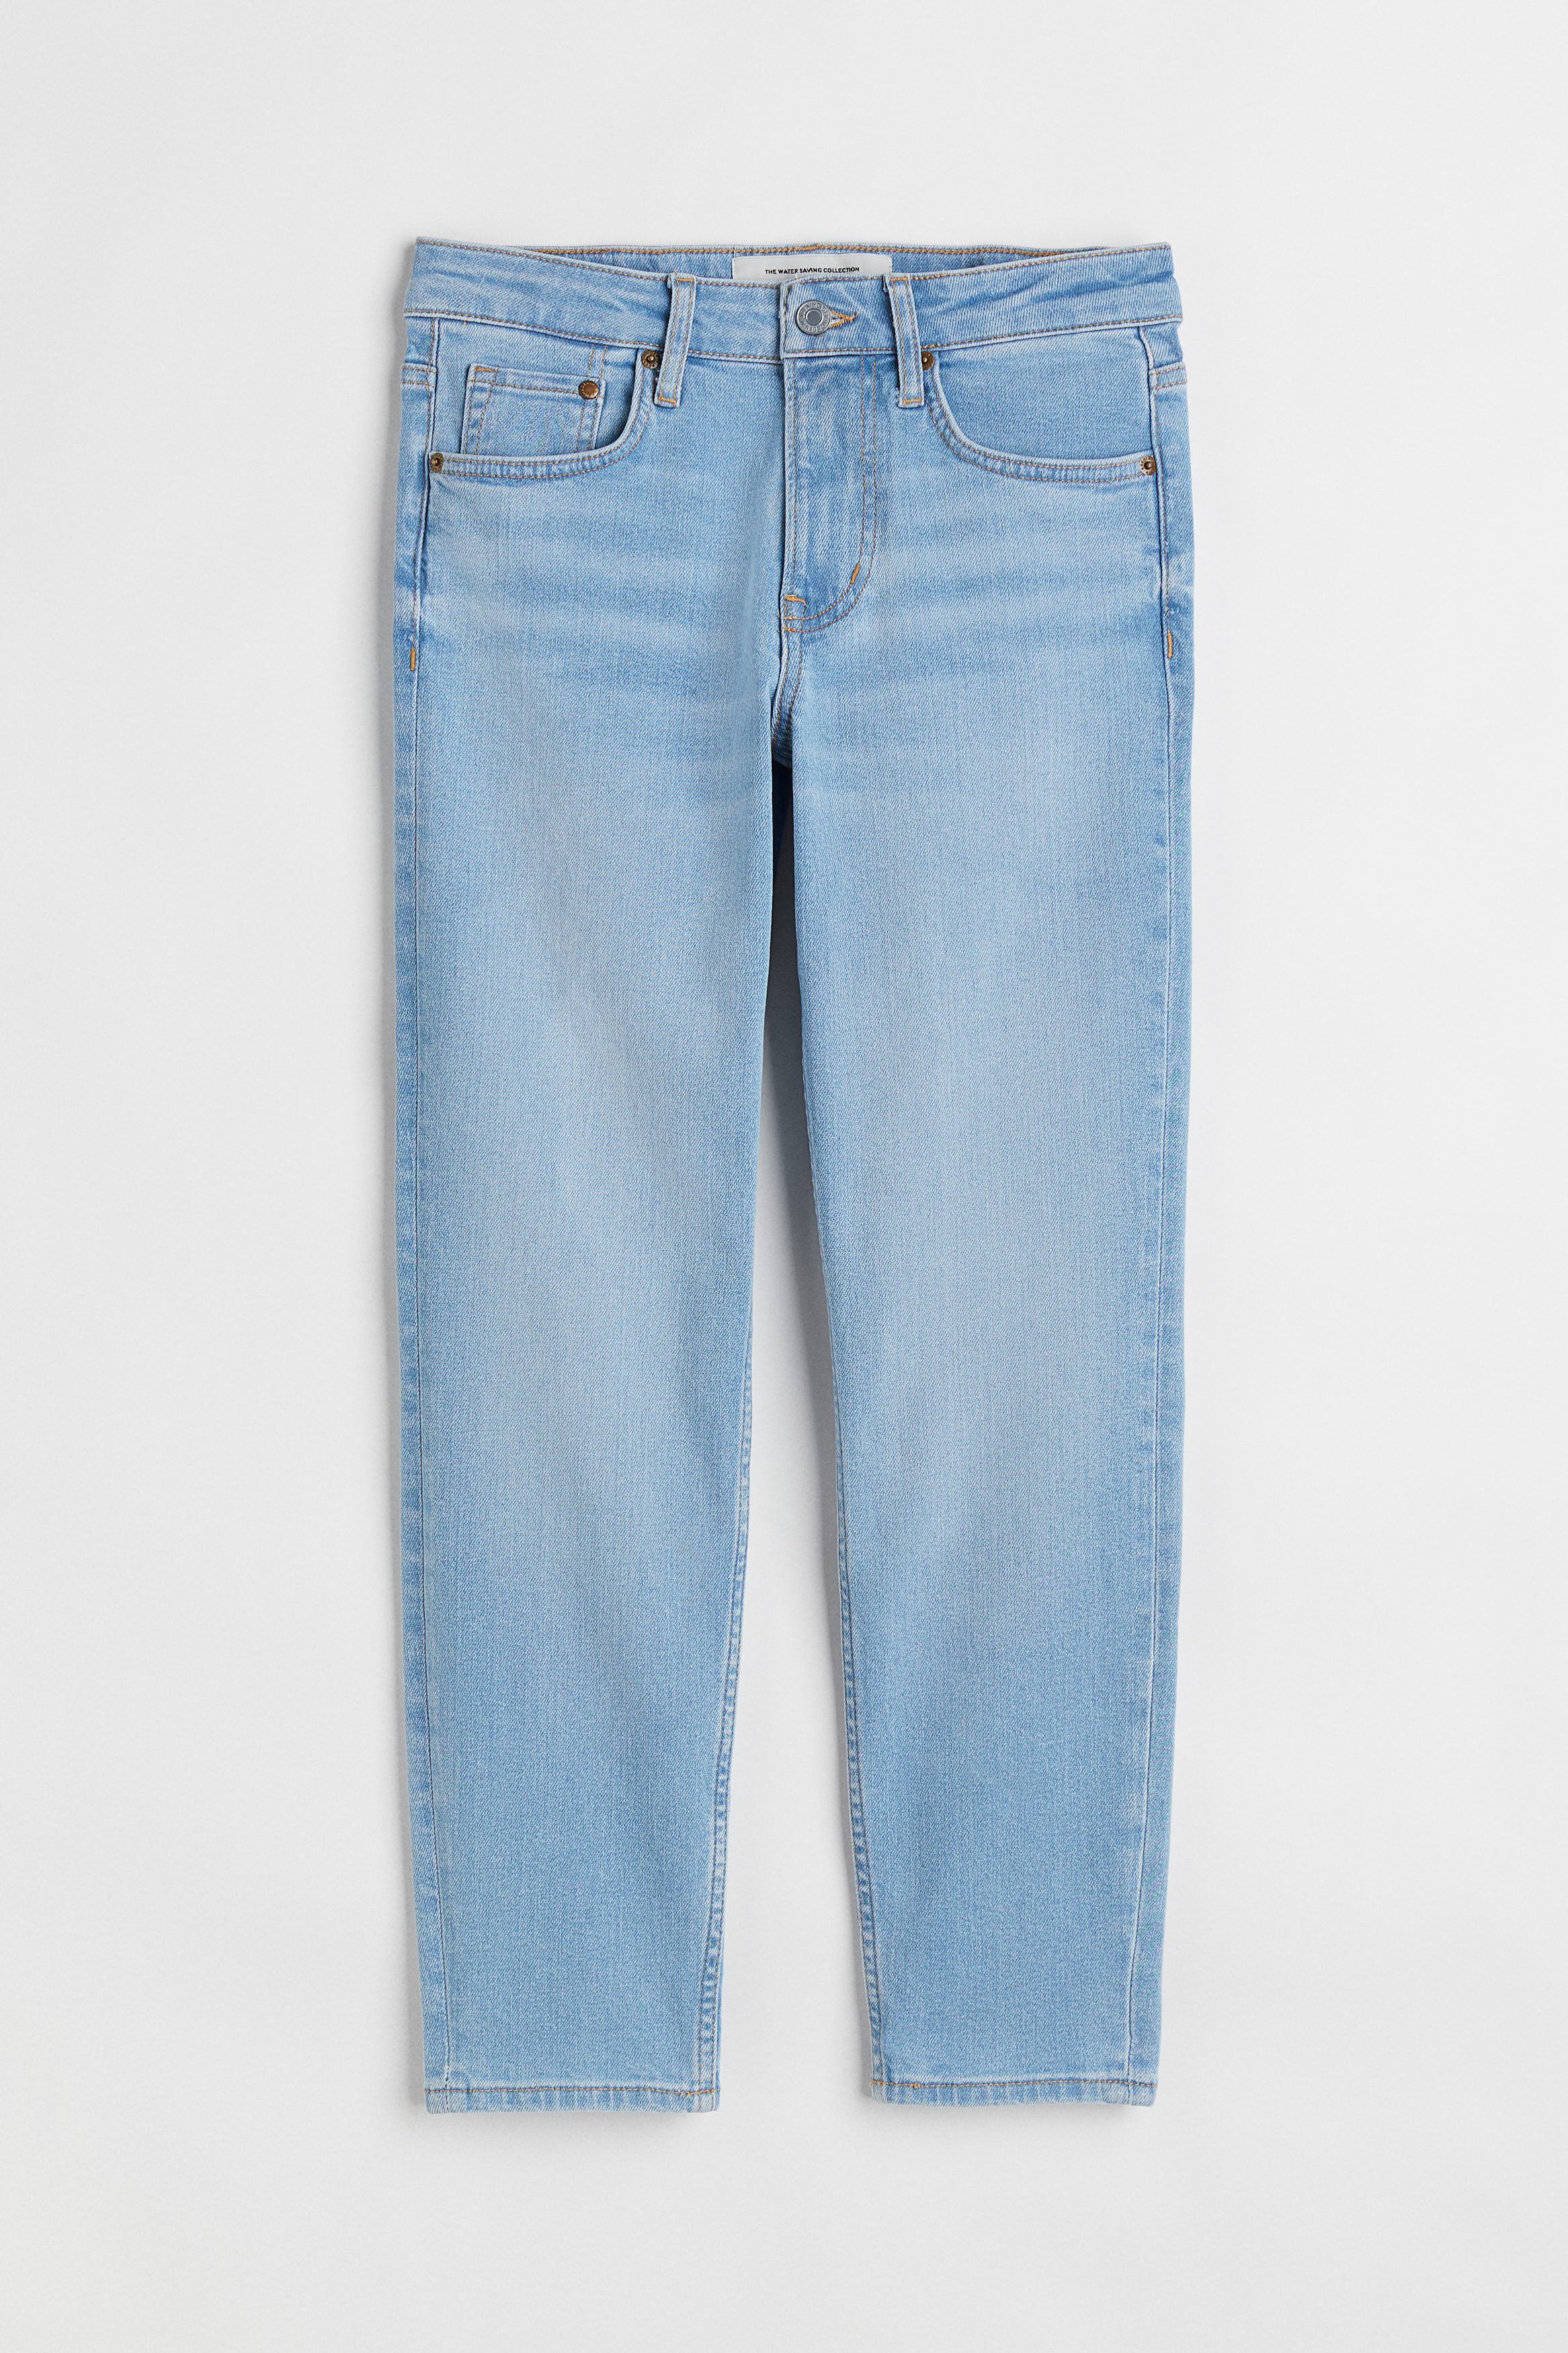 Billede af H&M 90s Skinny Regular Ankle Jeans Lys Denimblå, jeans. Farve: Light denim blue I størrelse 32